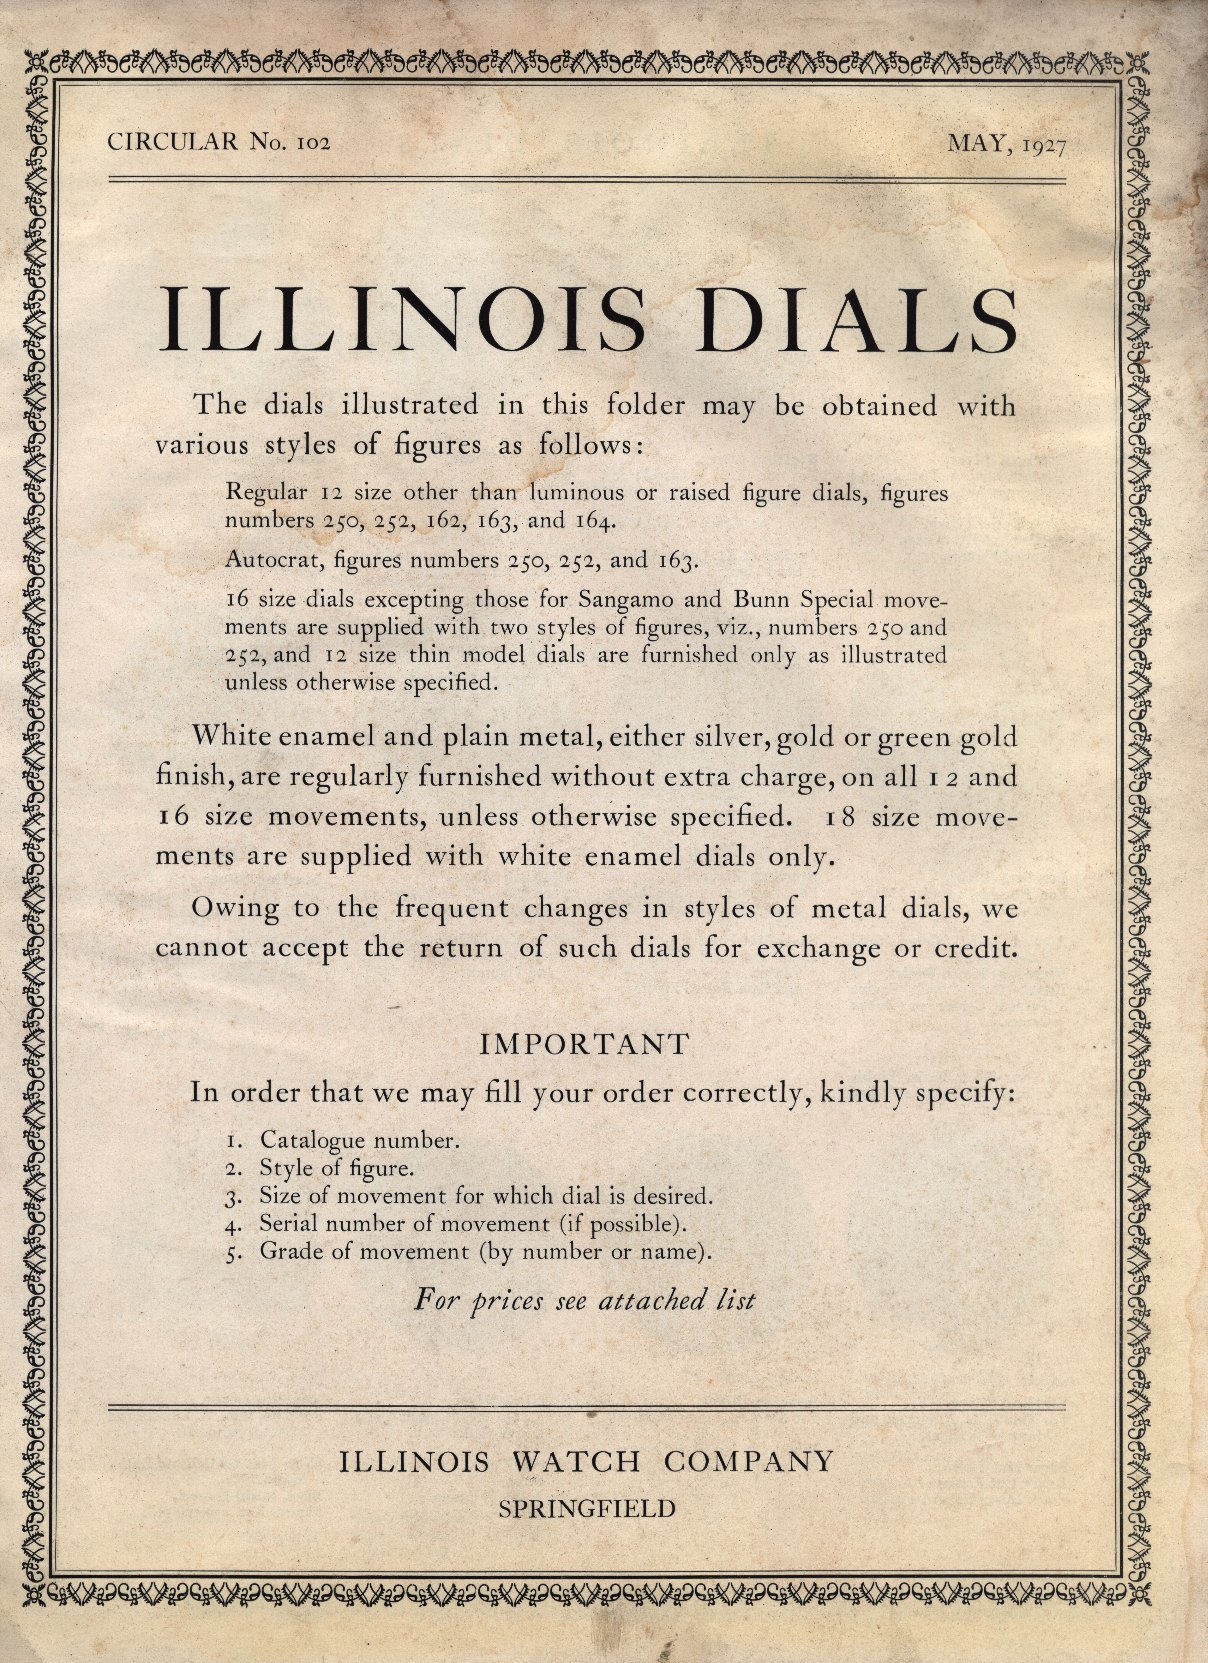 Illinois Watch Dials Catalog: Circular No. 102 (May 1927) Cover Image